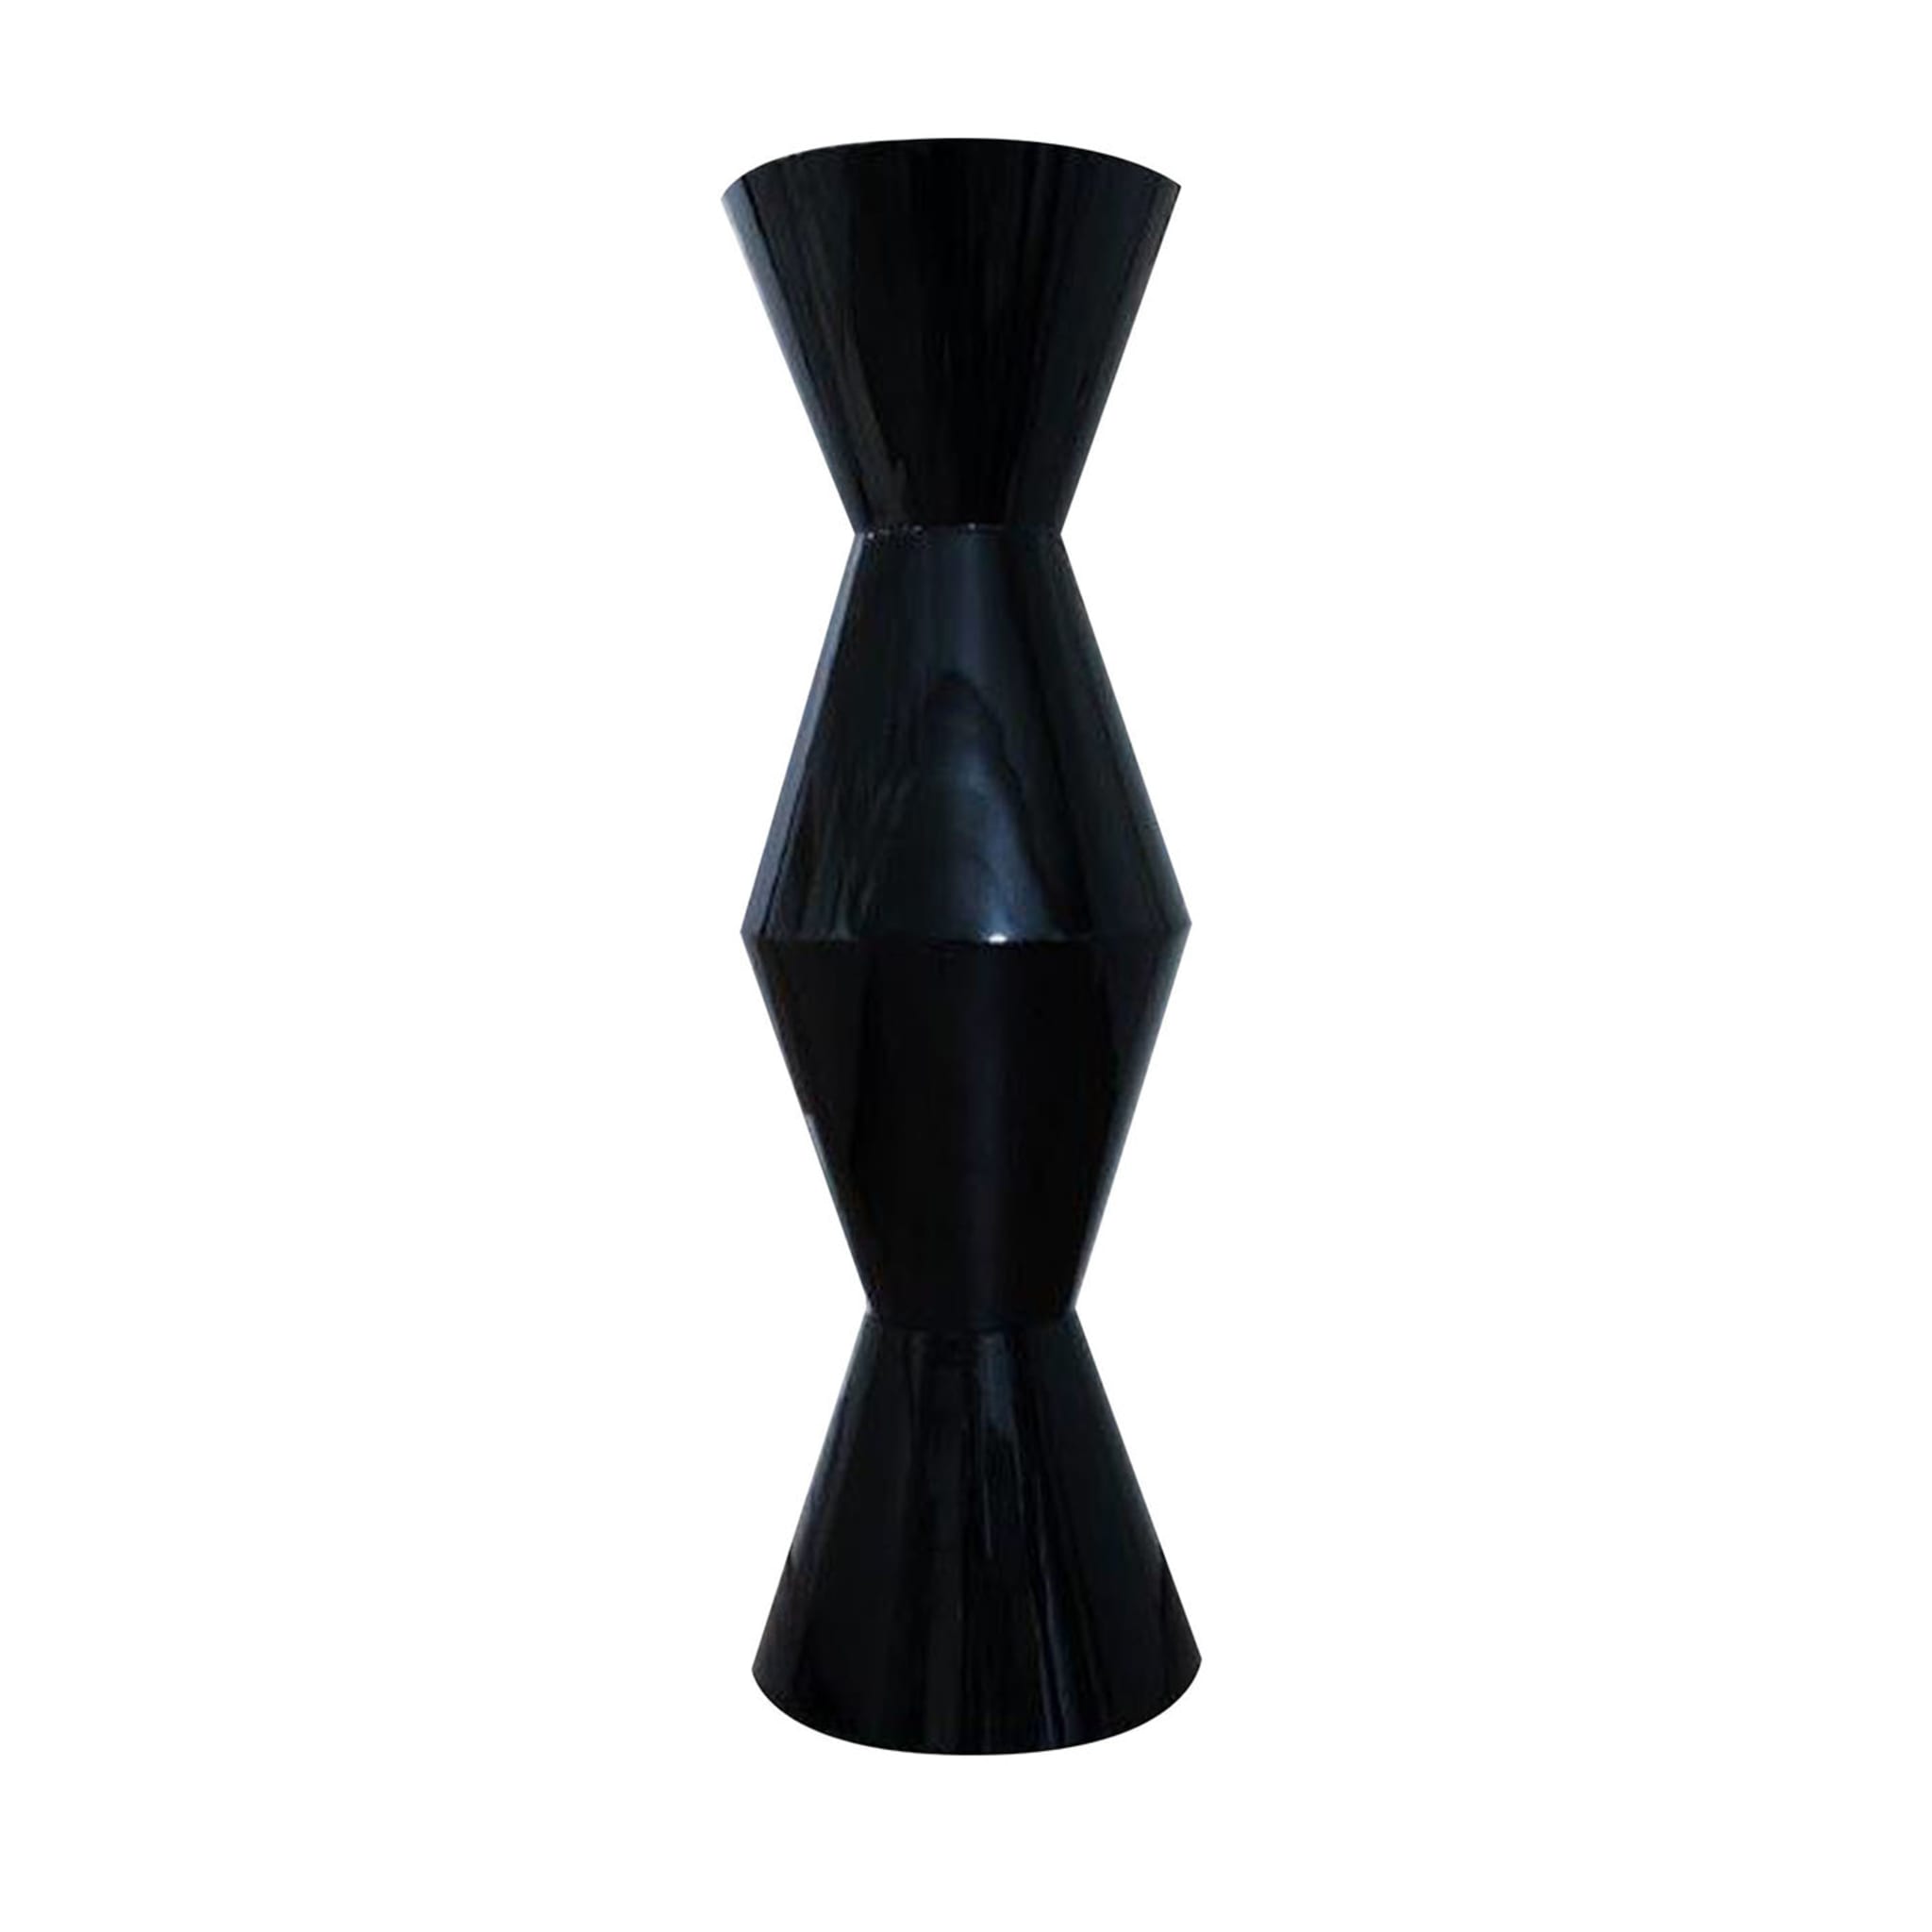 FoRMA Vaso nero Poliedro di Simone Micheli - Vista principale